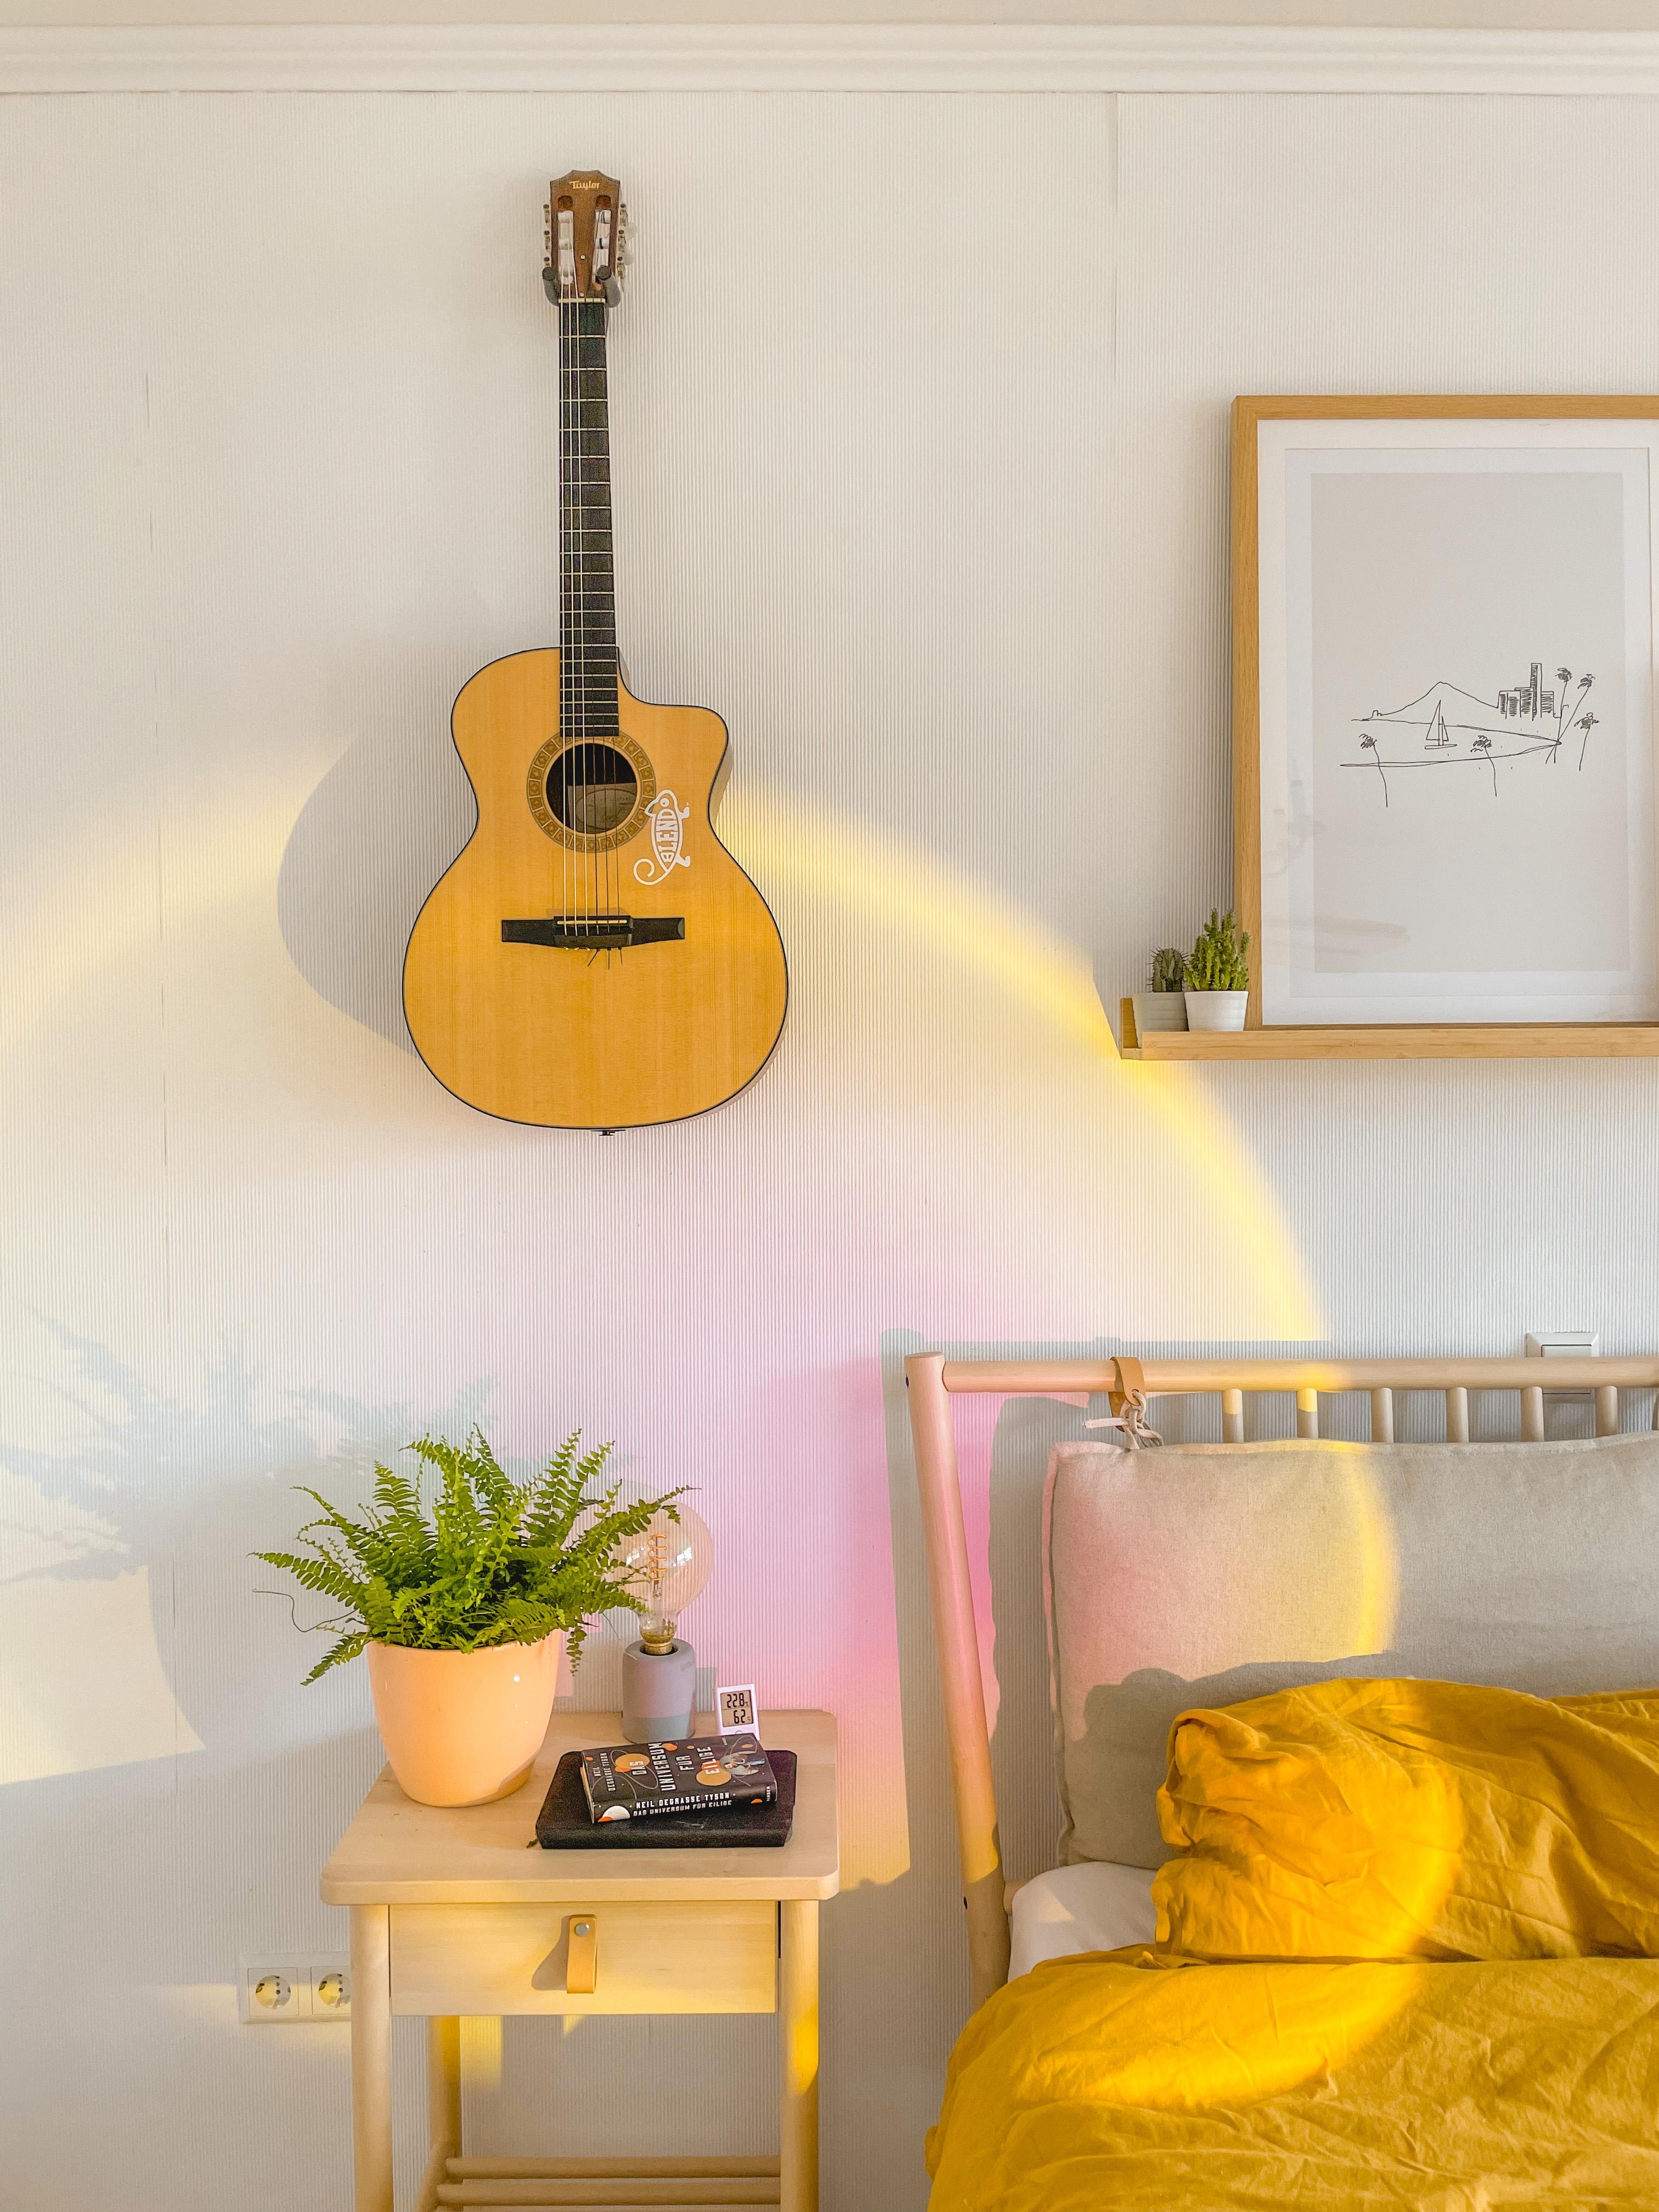 Unser neues #sunset Licht tut sich gut in unserem #Schlafzimmer <3 #pink #gelb #gitarre #bett